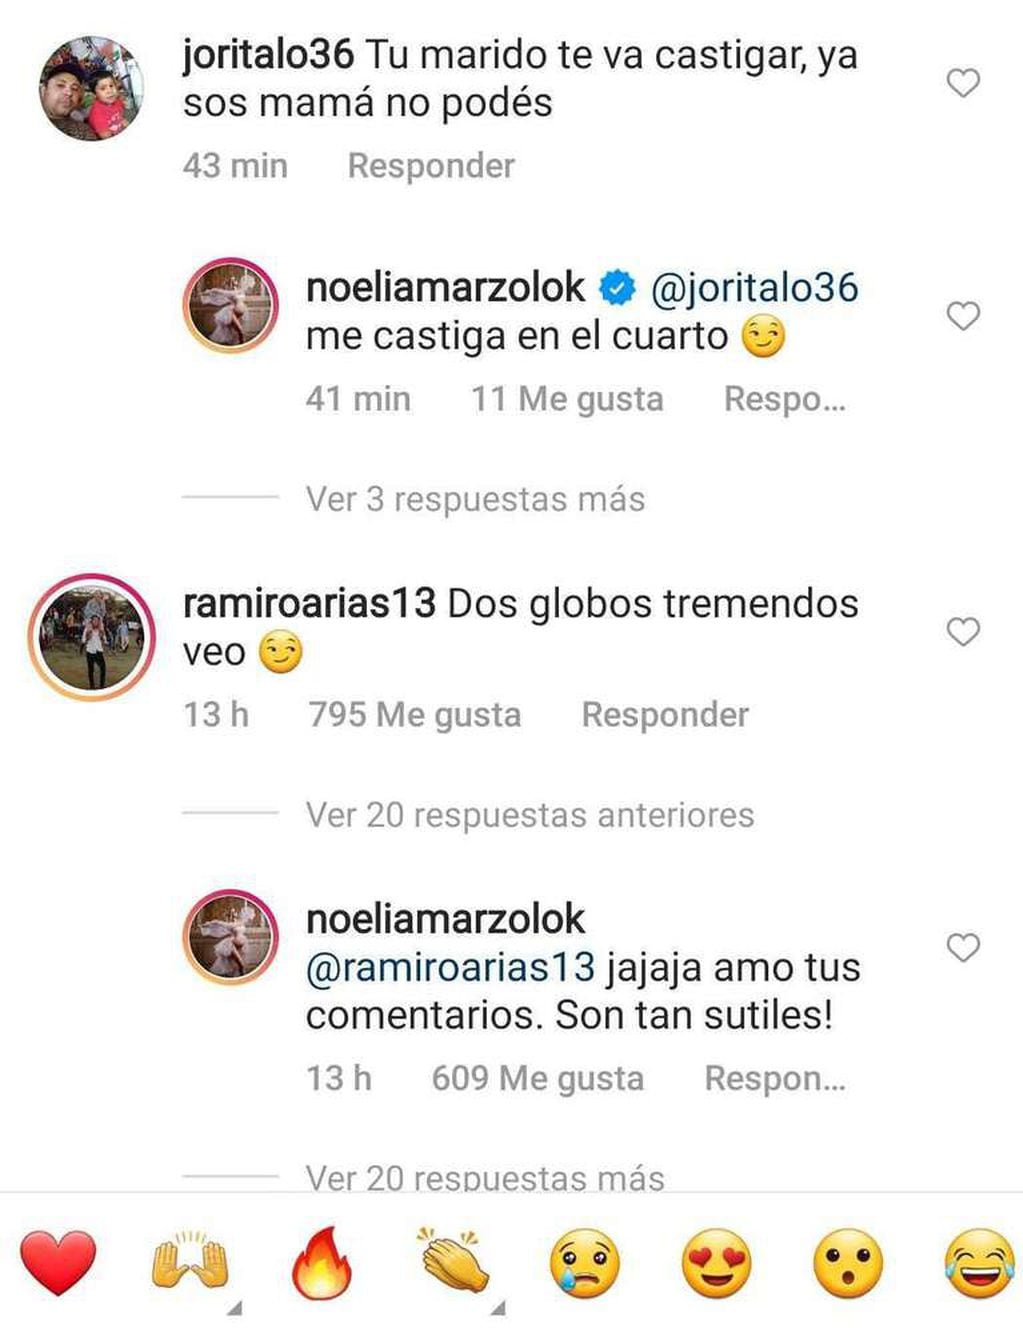 Los divertidos comentarios de Noelia Marzol y su marido